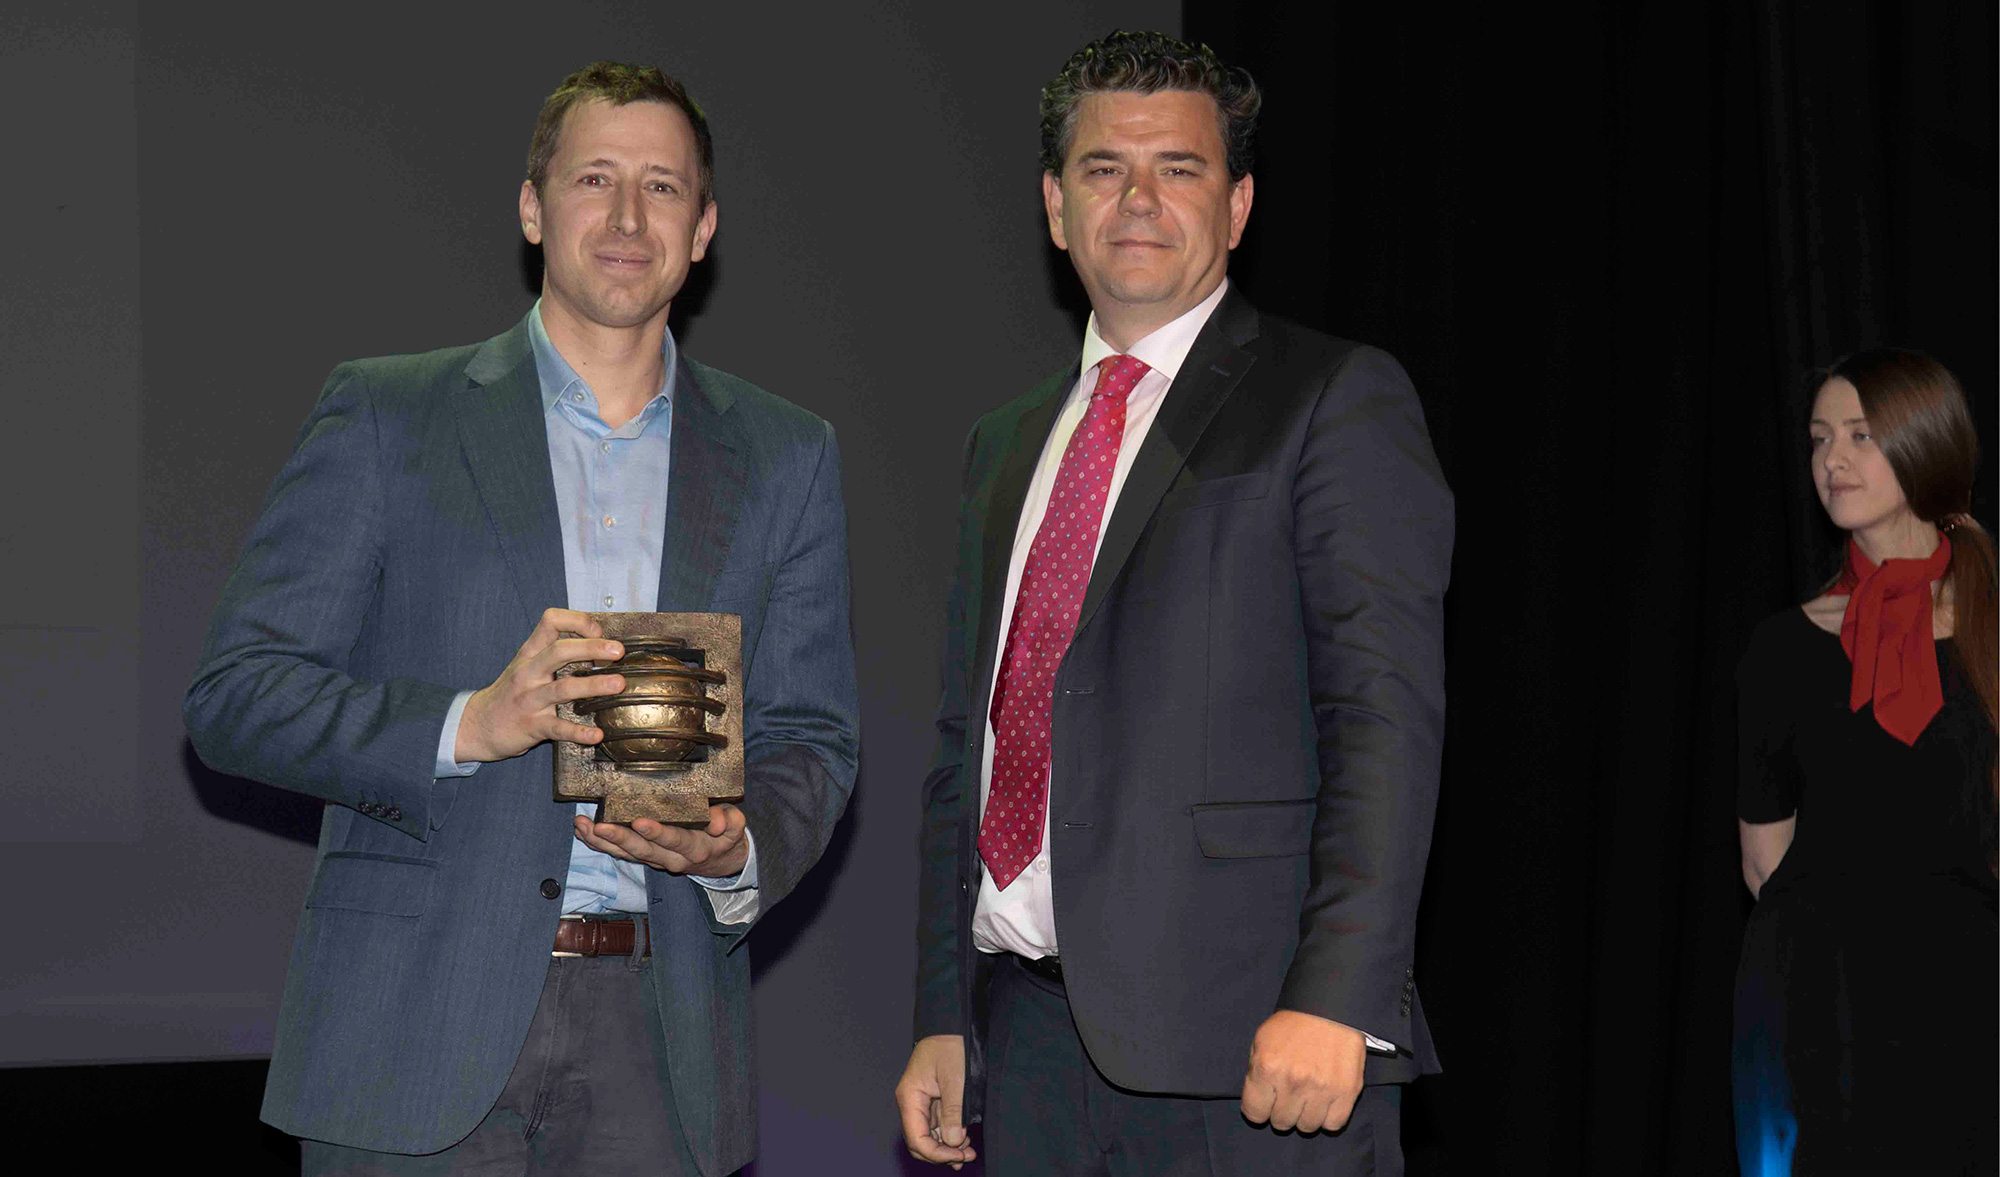 Samuel Marn, Big Data Marketing Manager de Microsoft recogi el galardn como ganador de mano de Francisco Verderas...